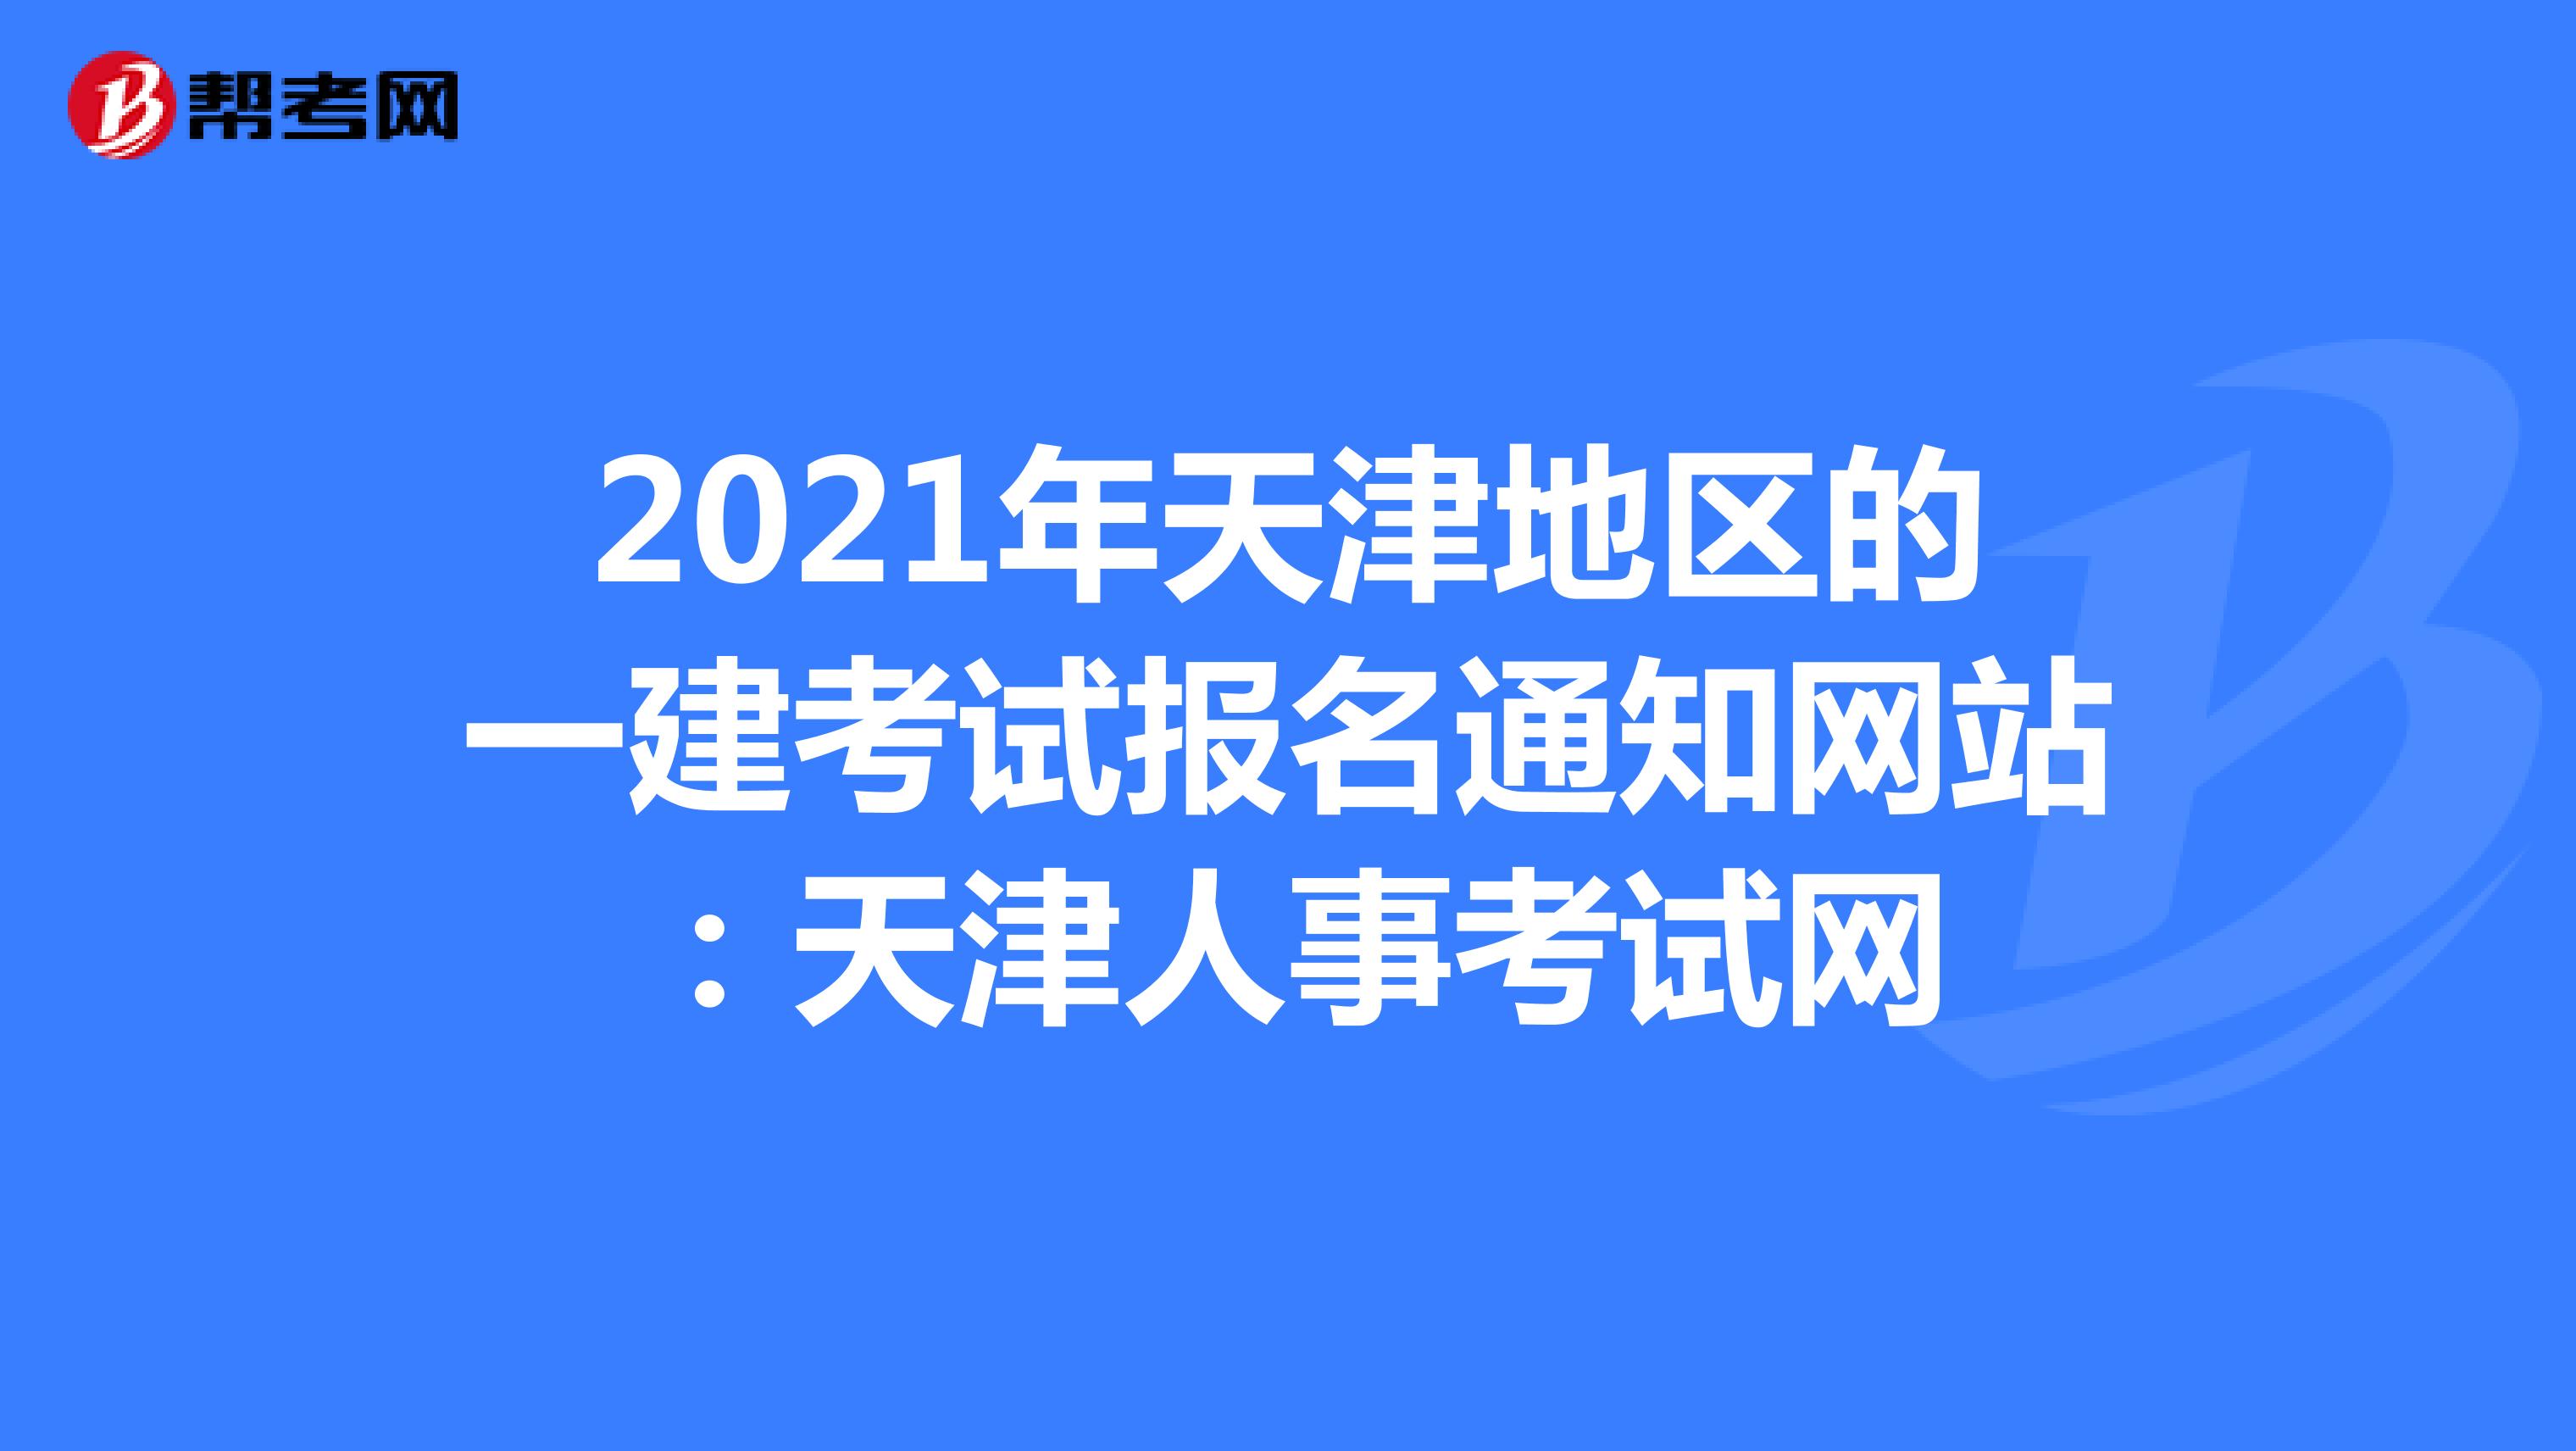 2021年天津地区的一建考试报名通知网站：天津人事考试网